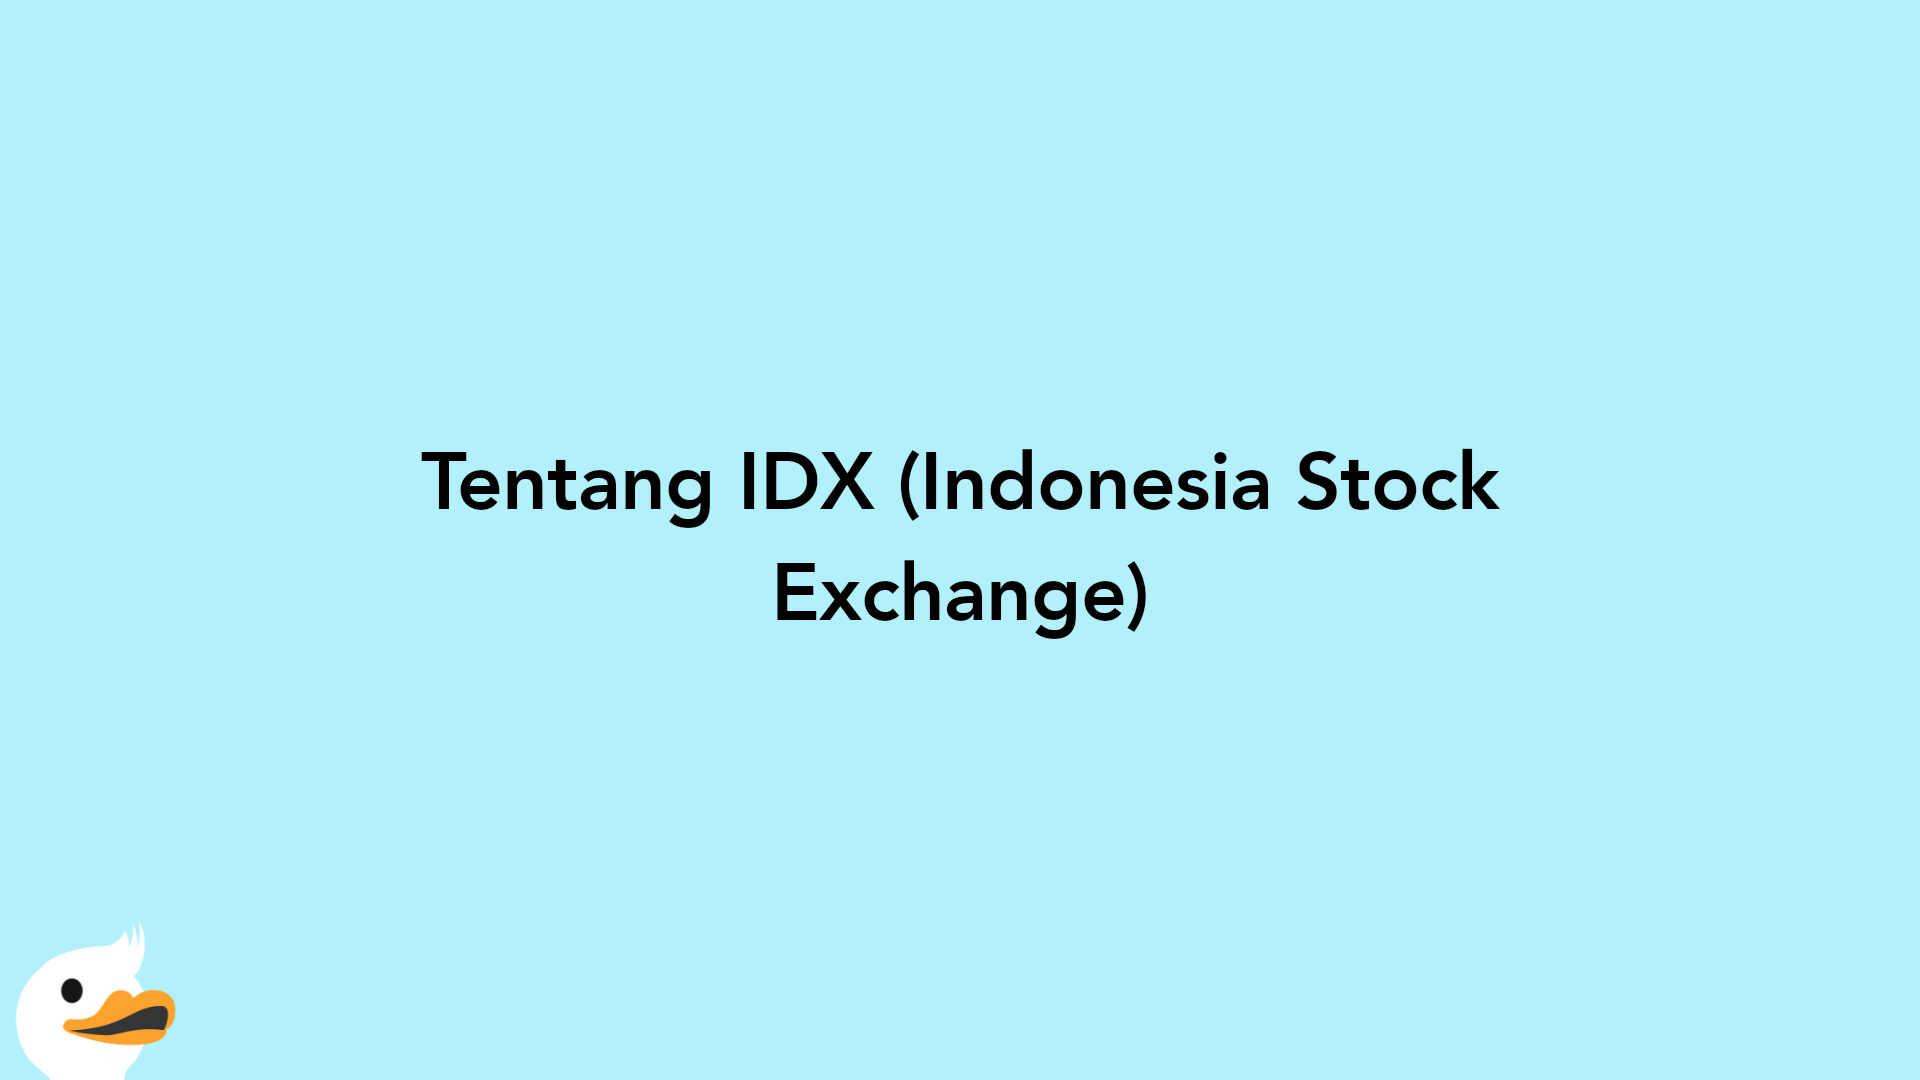 Tentang IDX (Indonesia Stock Exchange)